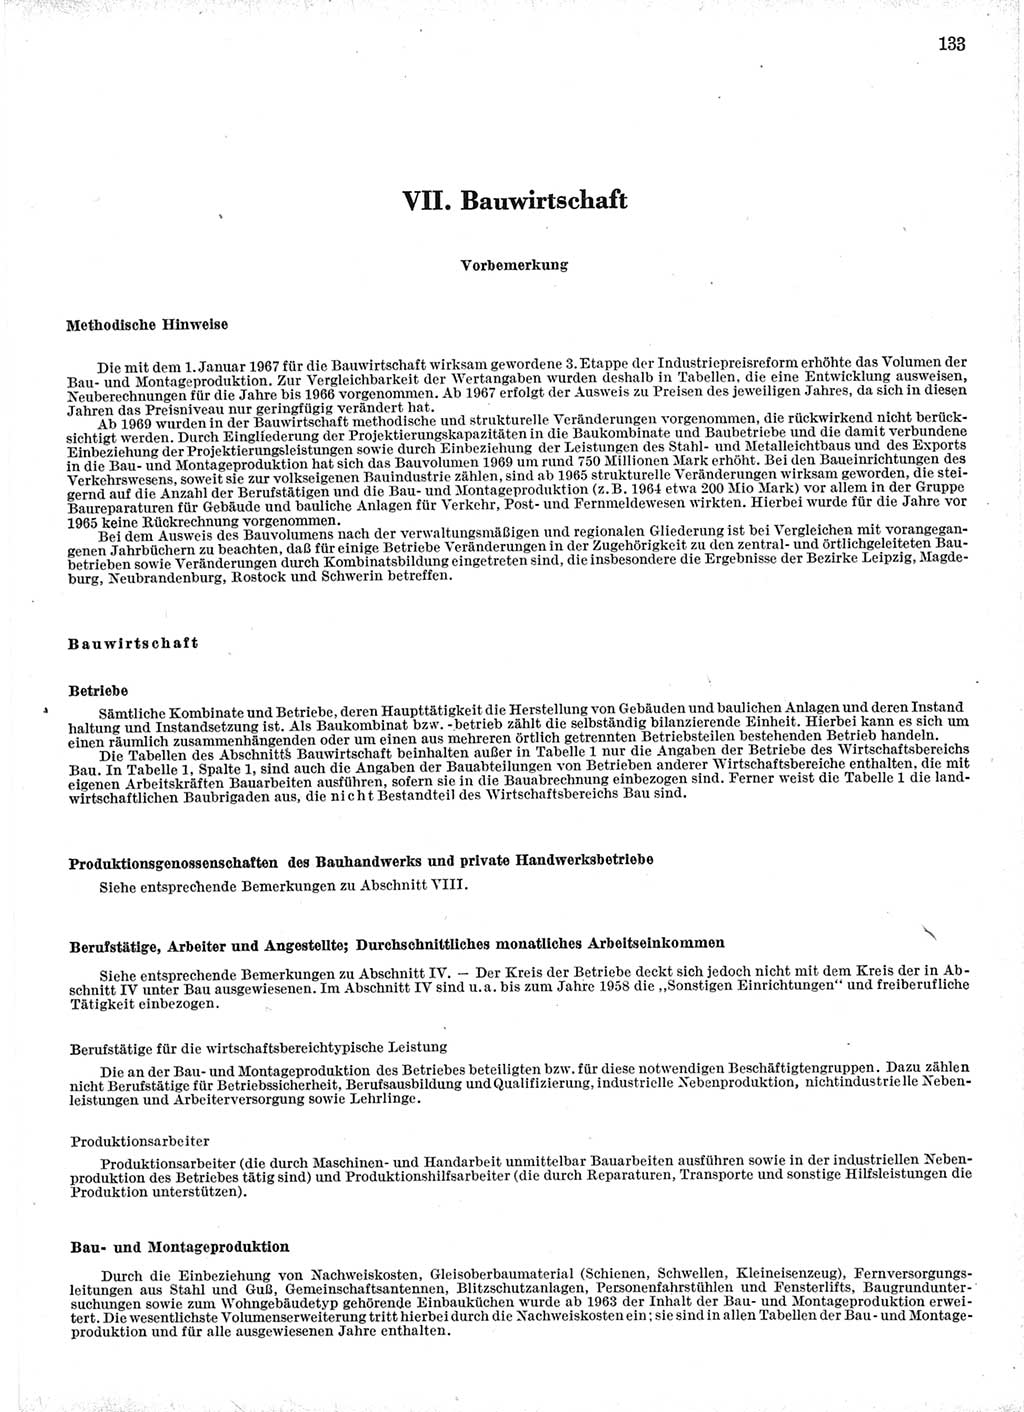 Statistisches Jahrbuch der Deutschen Demokratischen Republik (DDR) 1971, Seite 133 (Stat. Jb. DDR 1971, S. 133)